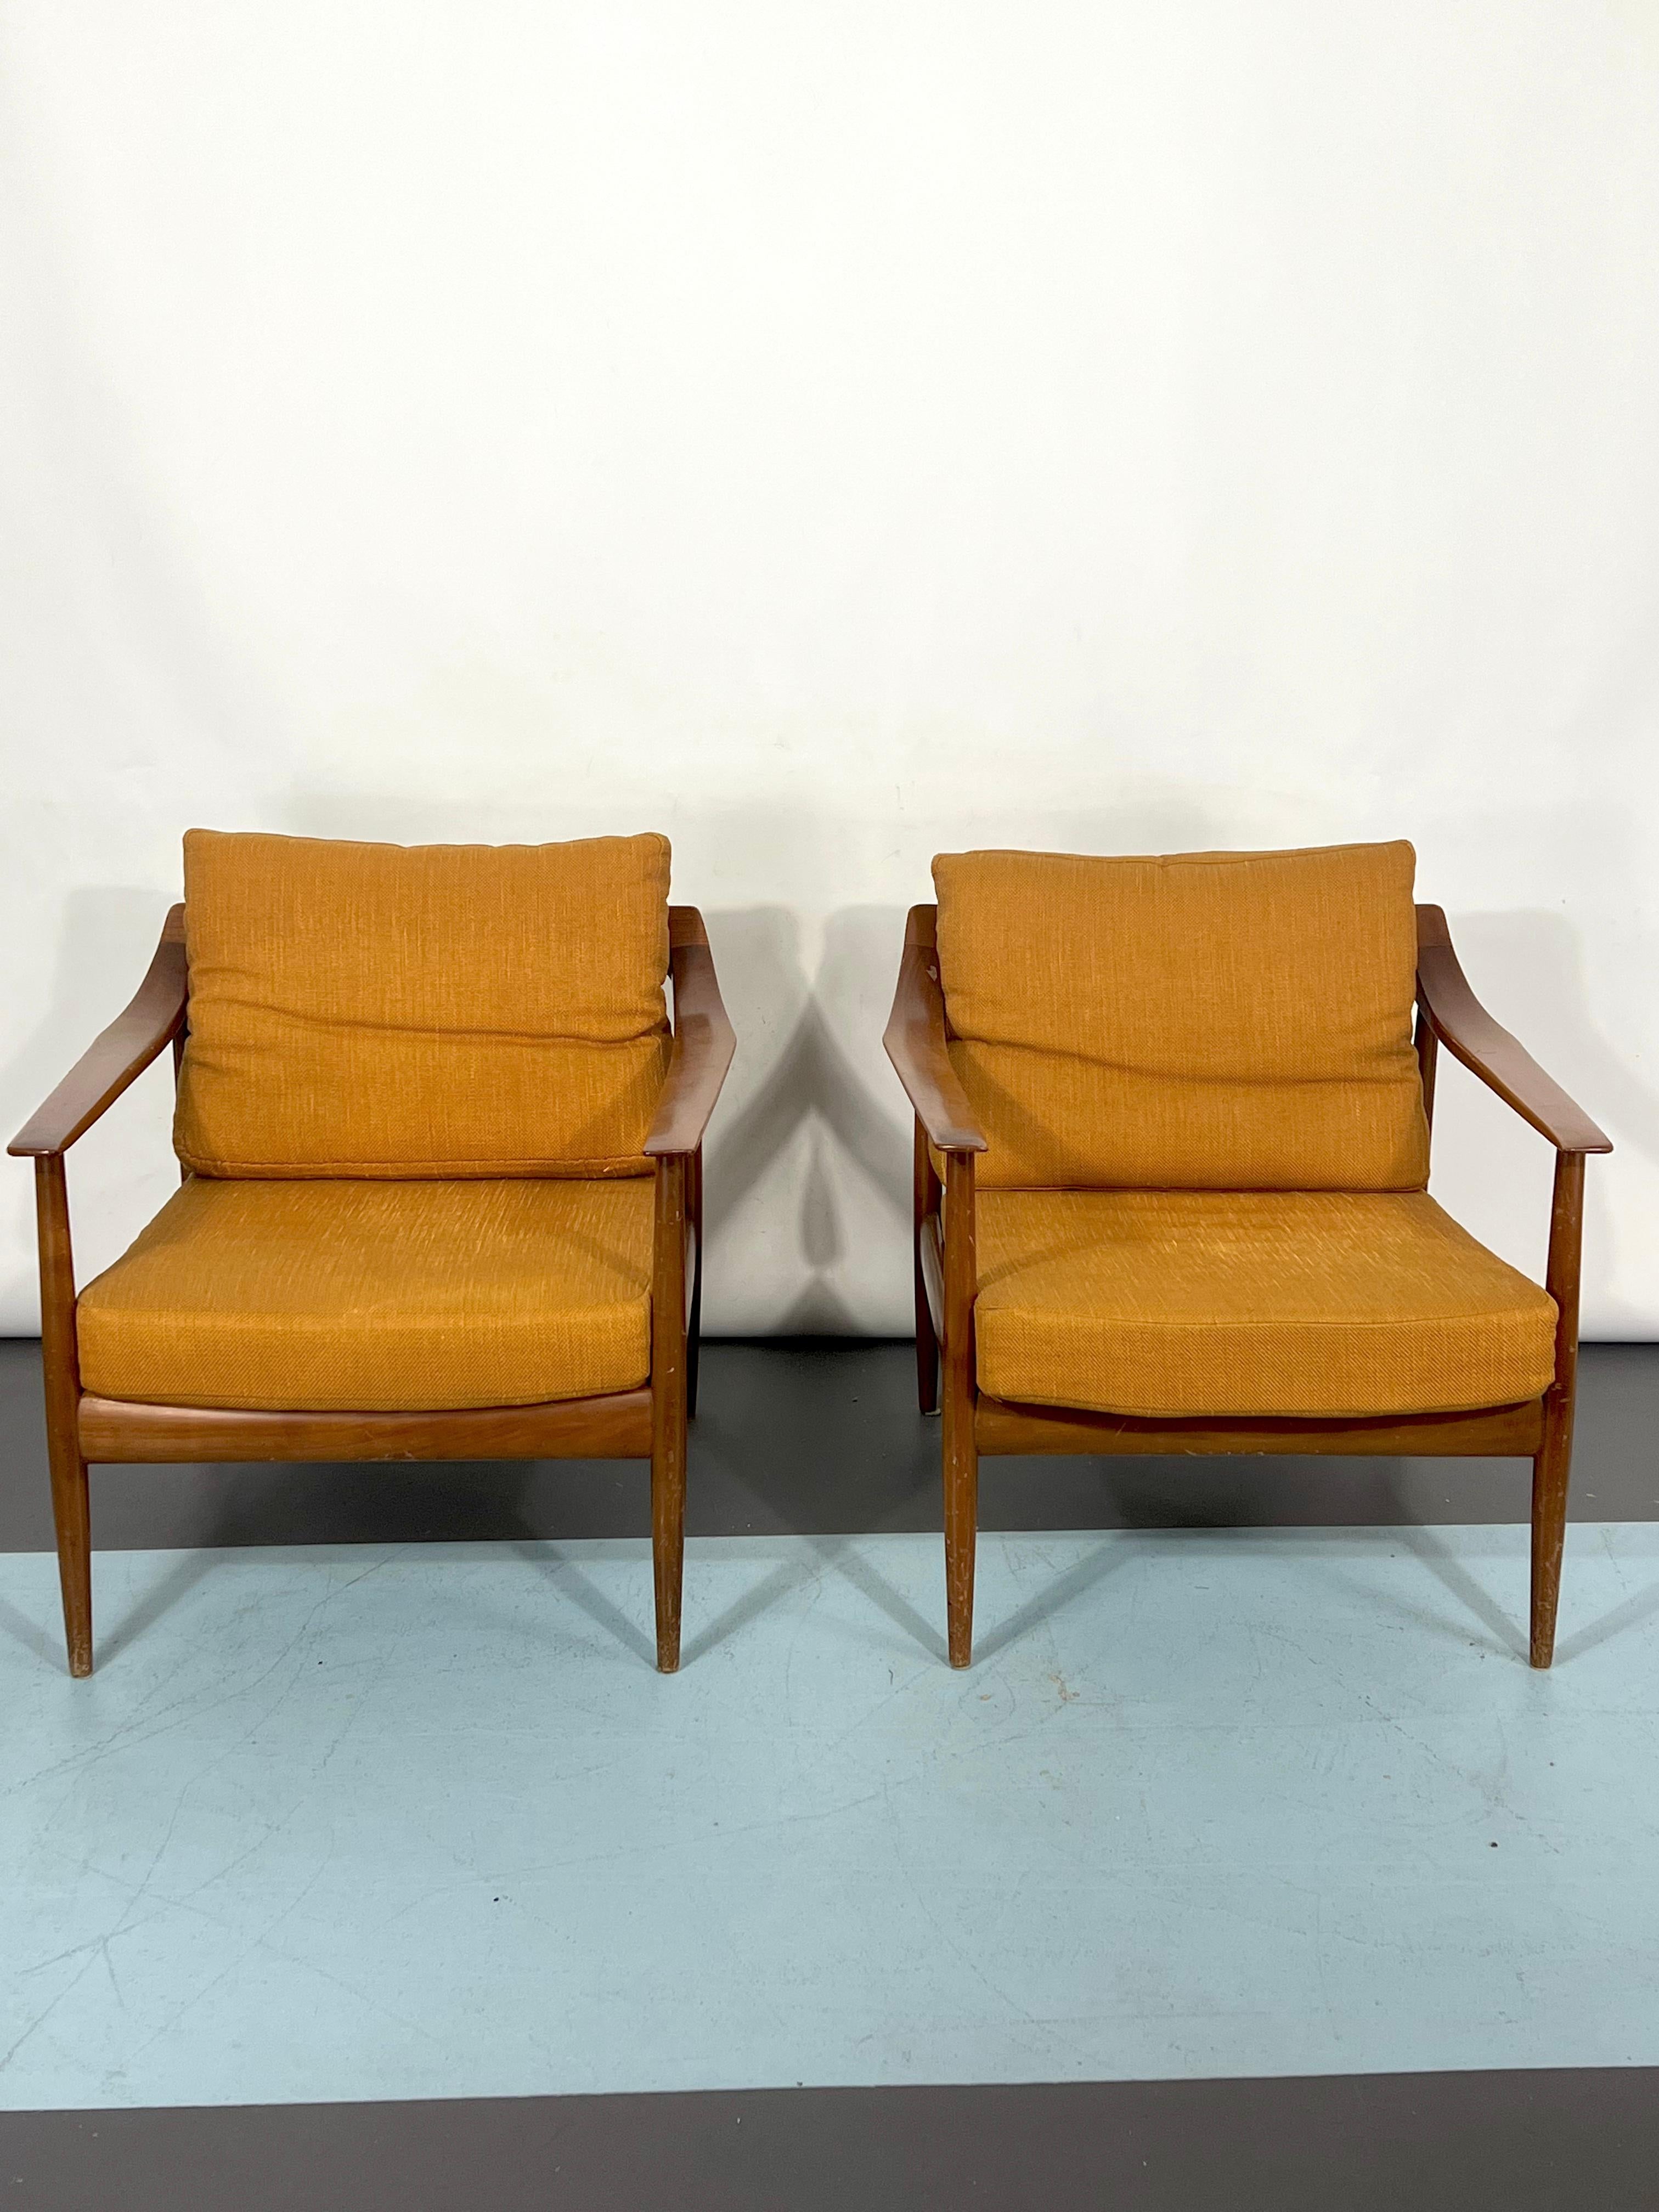 Guter Vintage-Zustand mit Alters- und Gebrauchsspuren für dieses Set aus zwei Sesseln aus Palisanderholz, das von Walter Knoll entworfen und in den 50er Jahren in Deutschland hergestellt wurde.